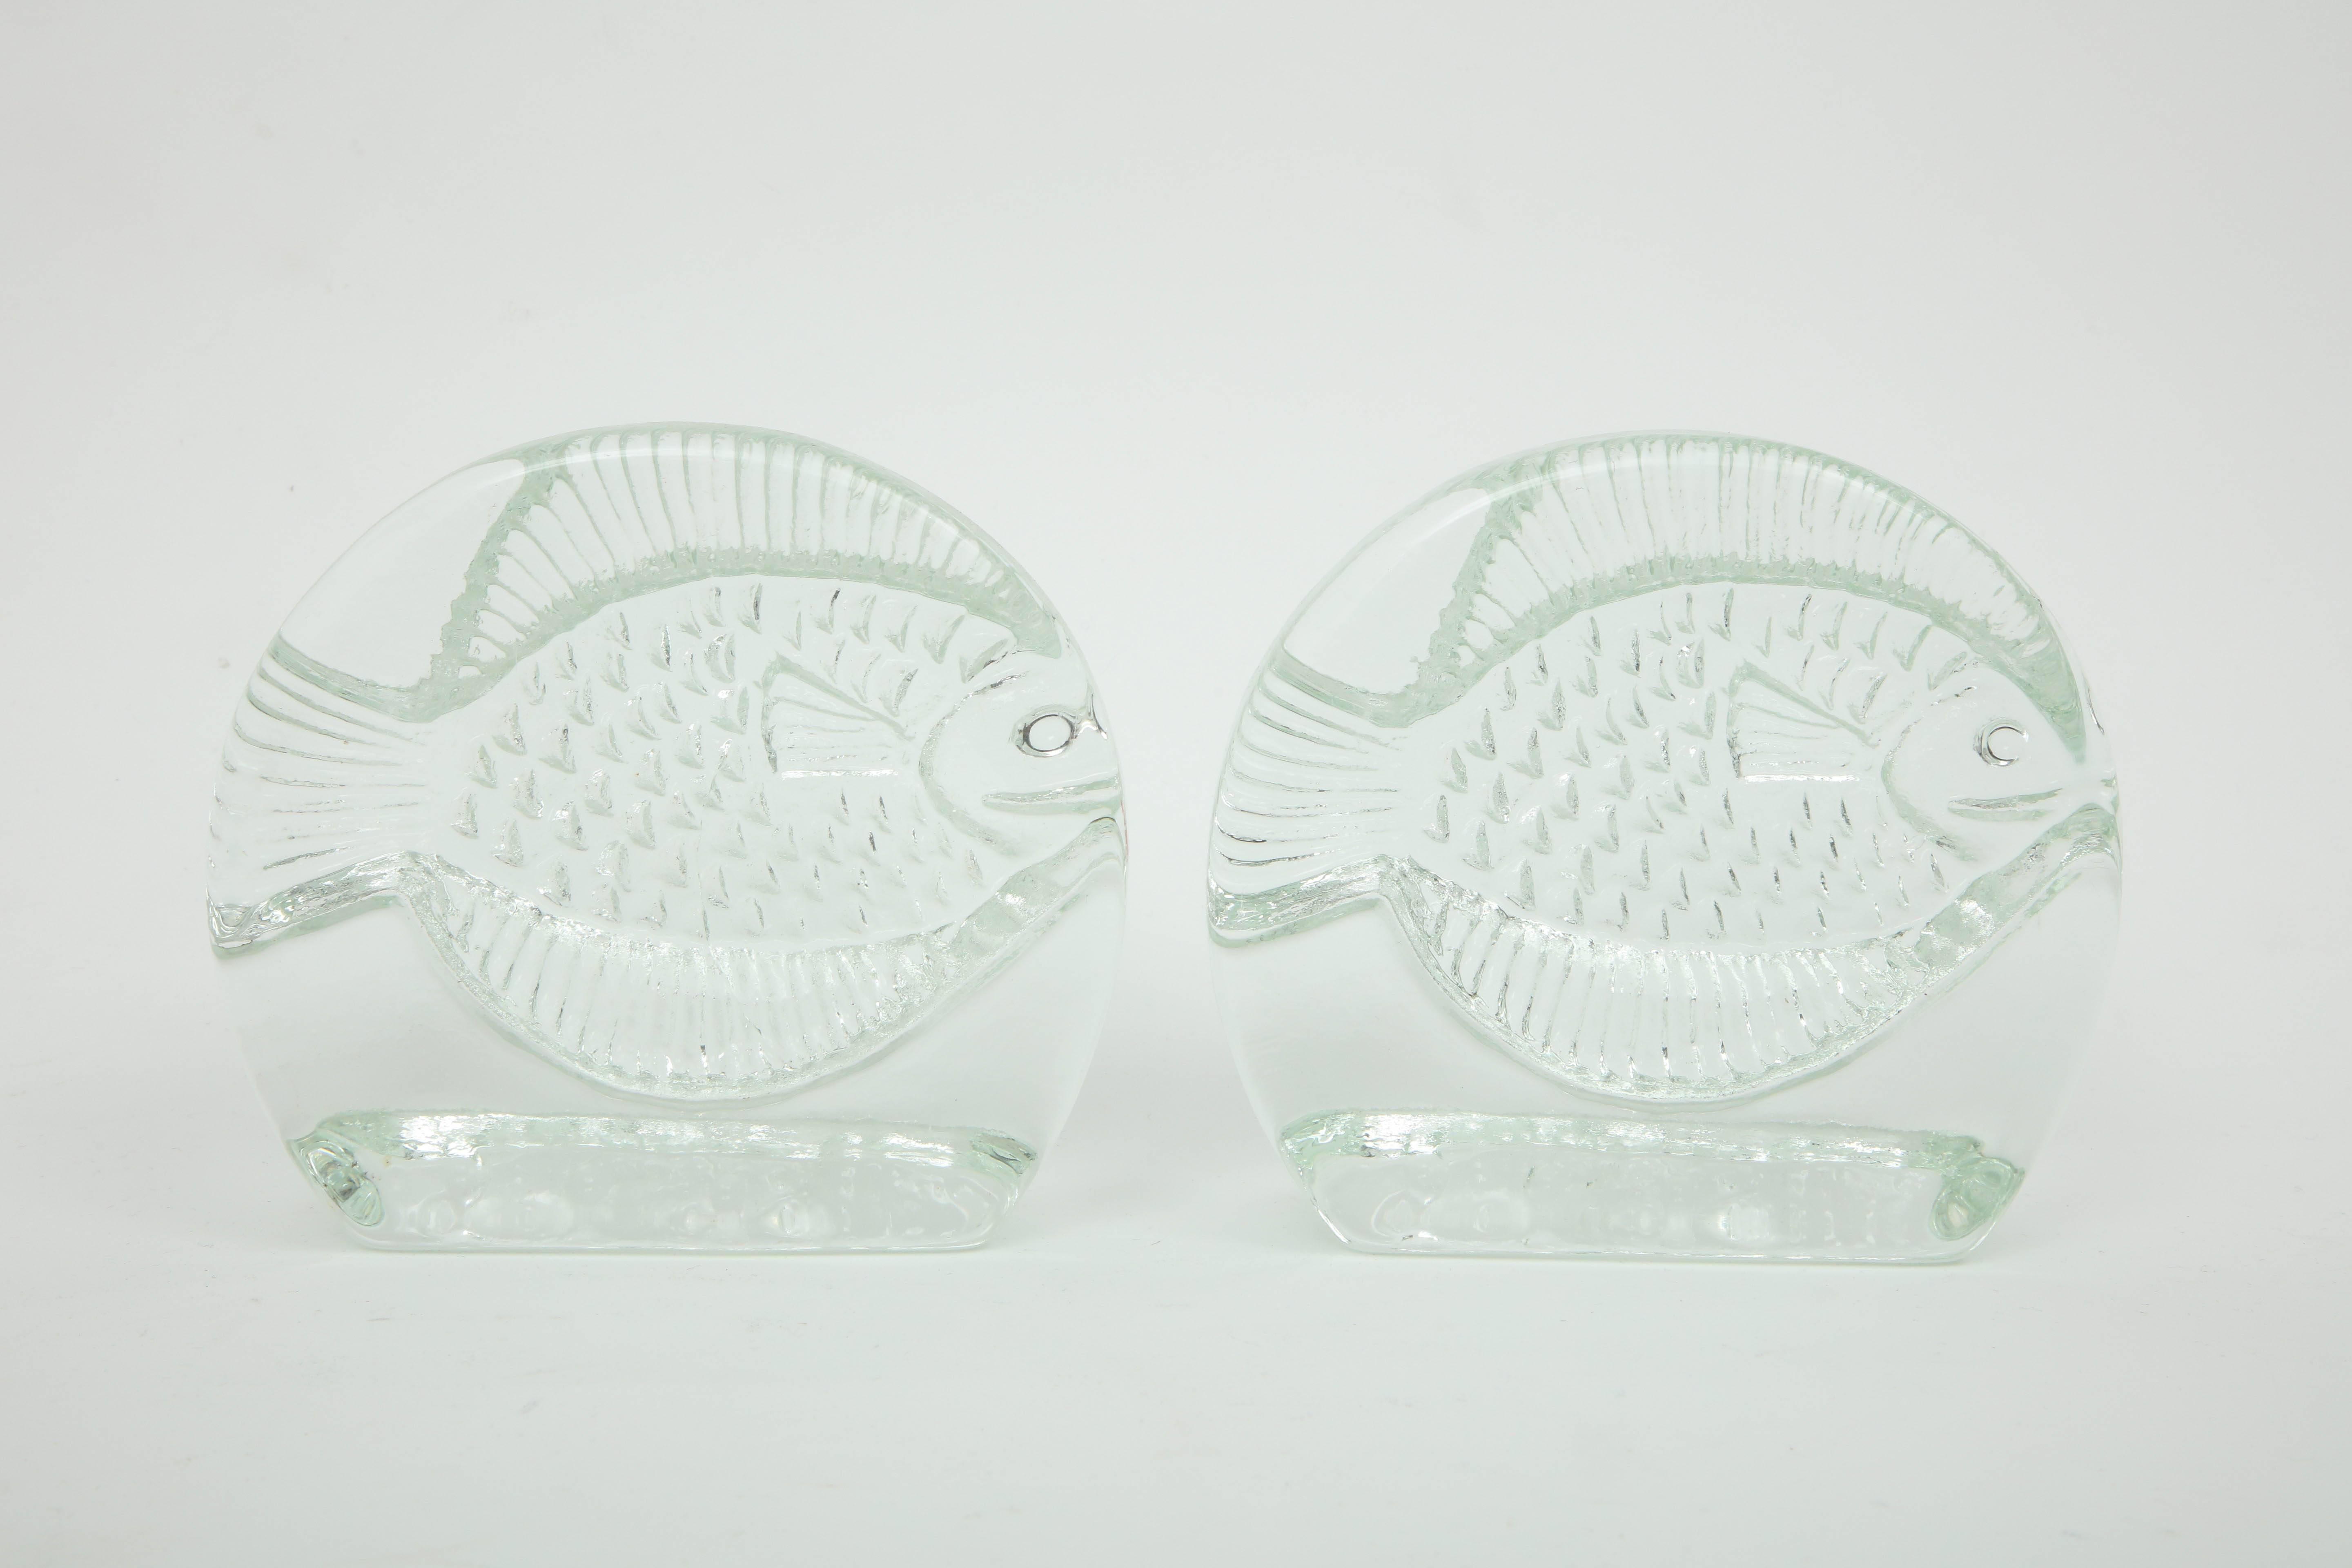 Buchstützen aus Glas mit Fischmotiven vonnko (20. Jahrhundert)